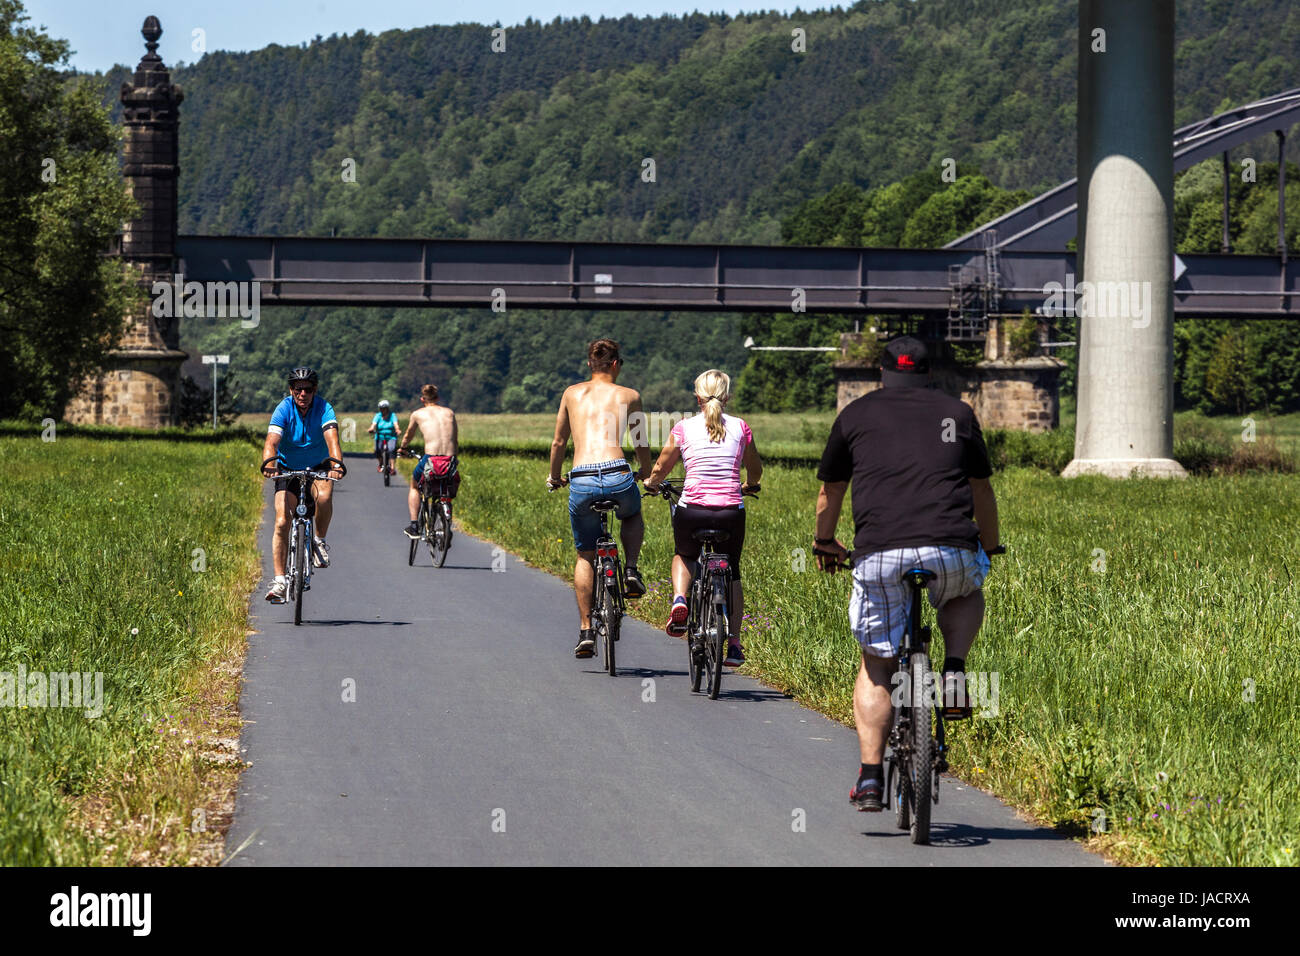 Les gens, les cyclistes sur une piste cyclable Elbe vélo à bridge Bad Schandau, Saxe, Allemagne pont vallée de l'Elbe, de l'Europe Banque D'Images